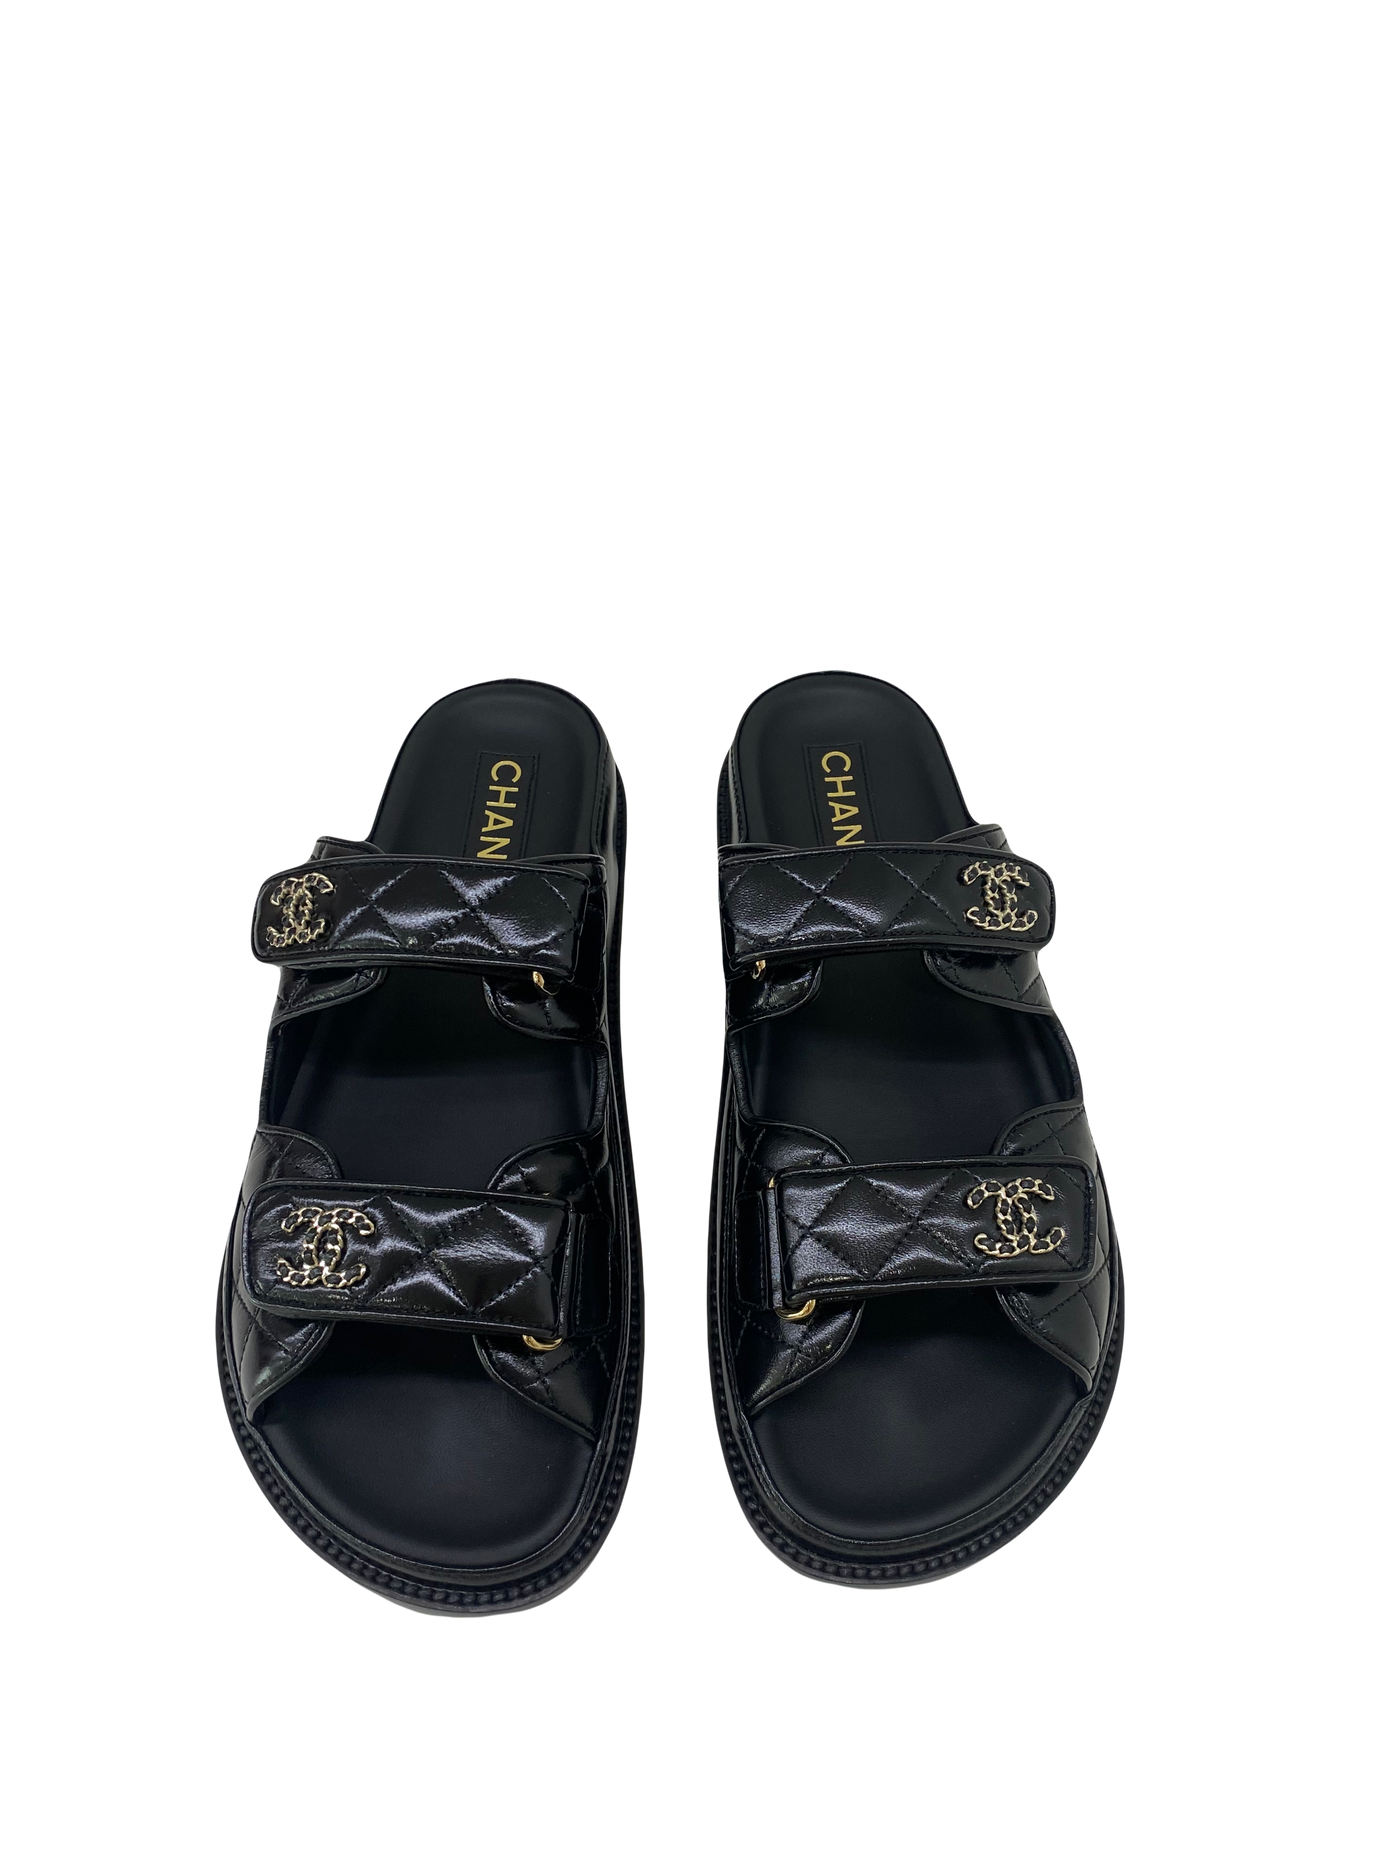 Chanel Dad Sandal Slide - Size 38